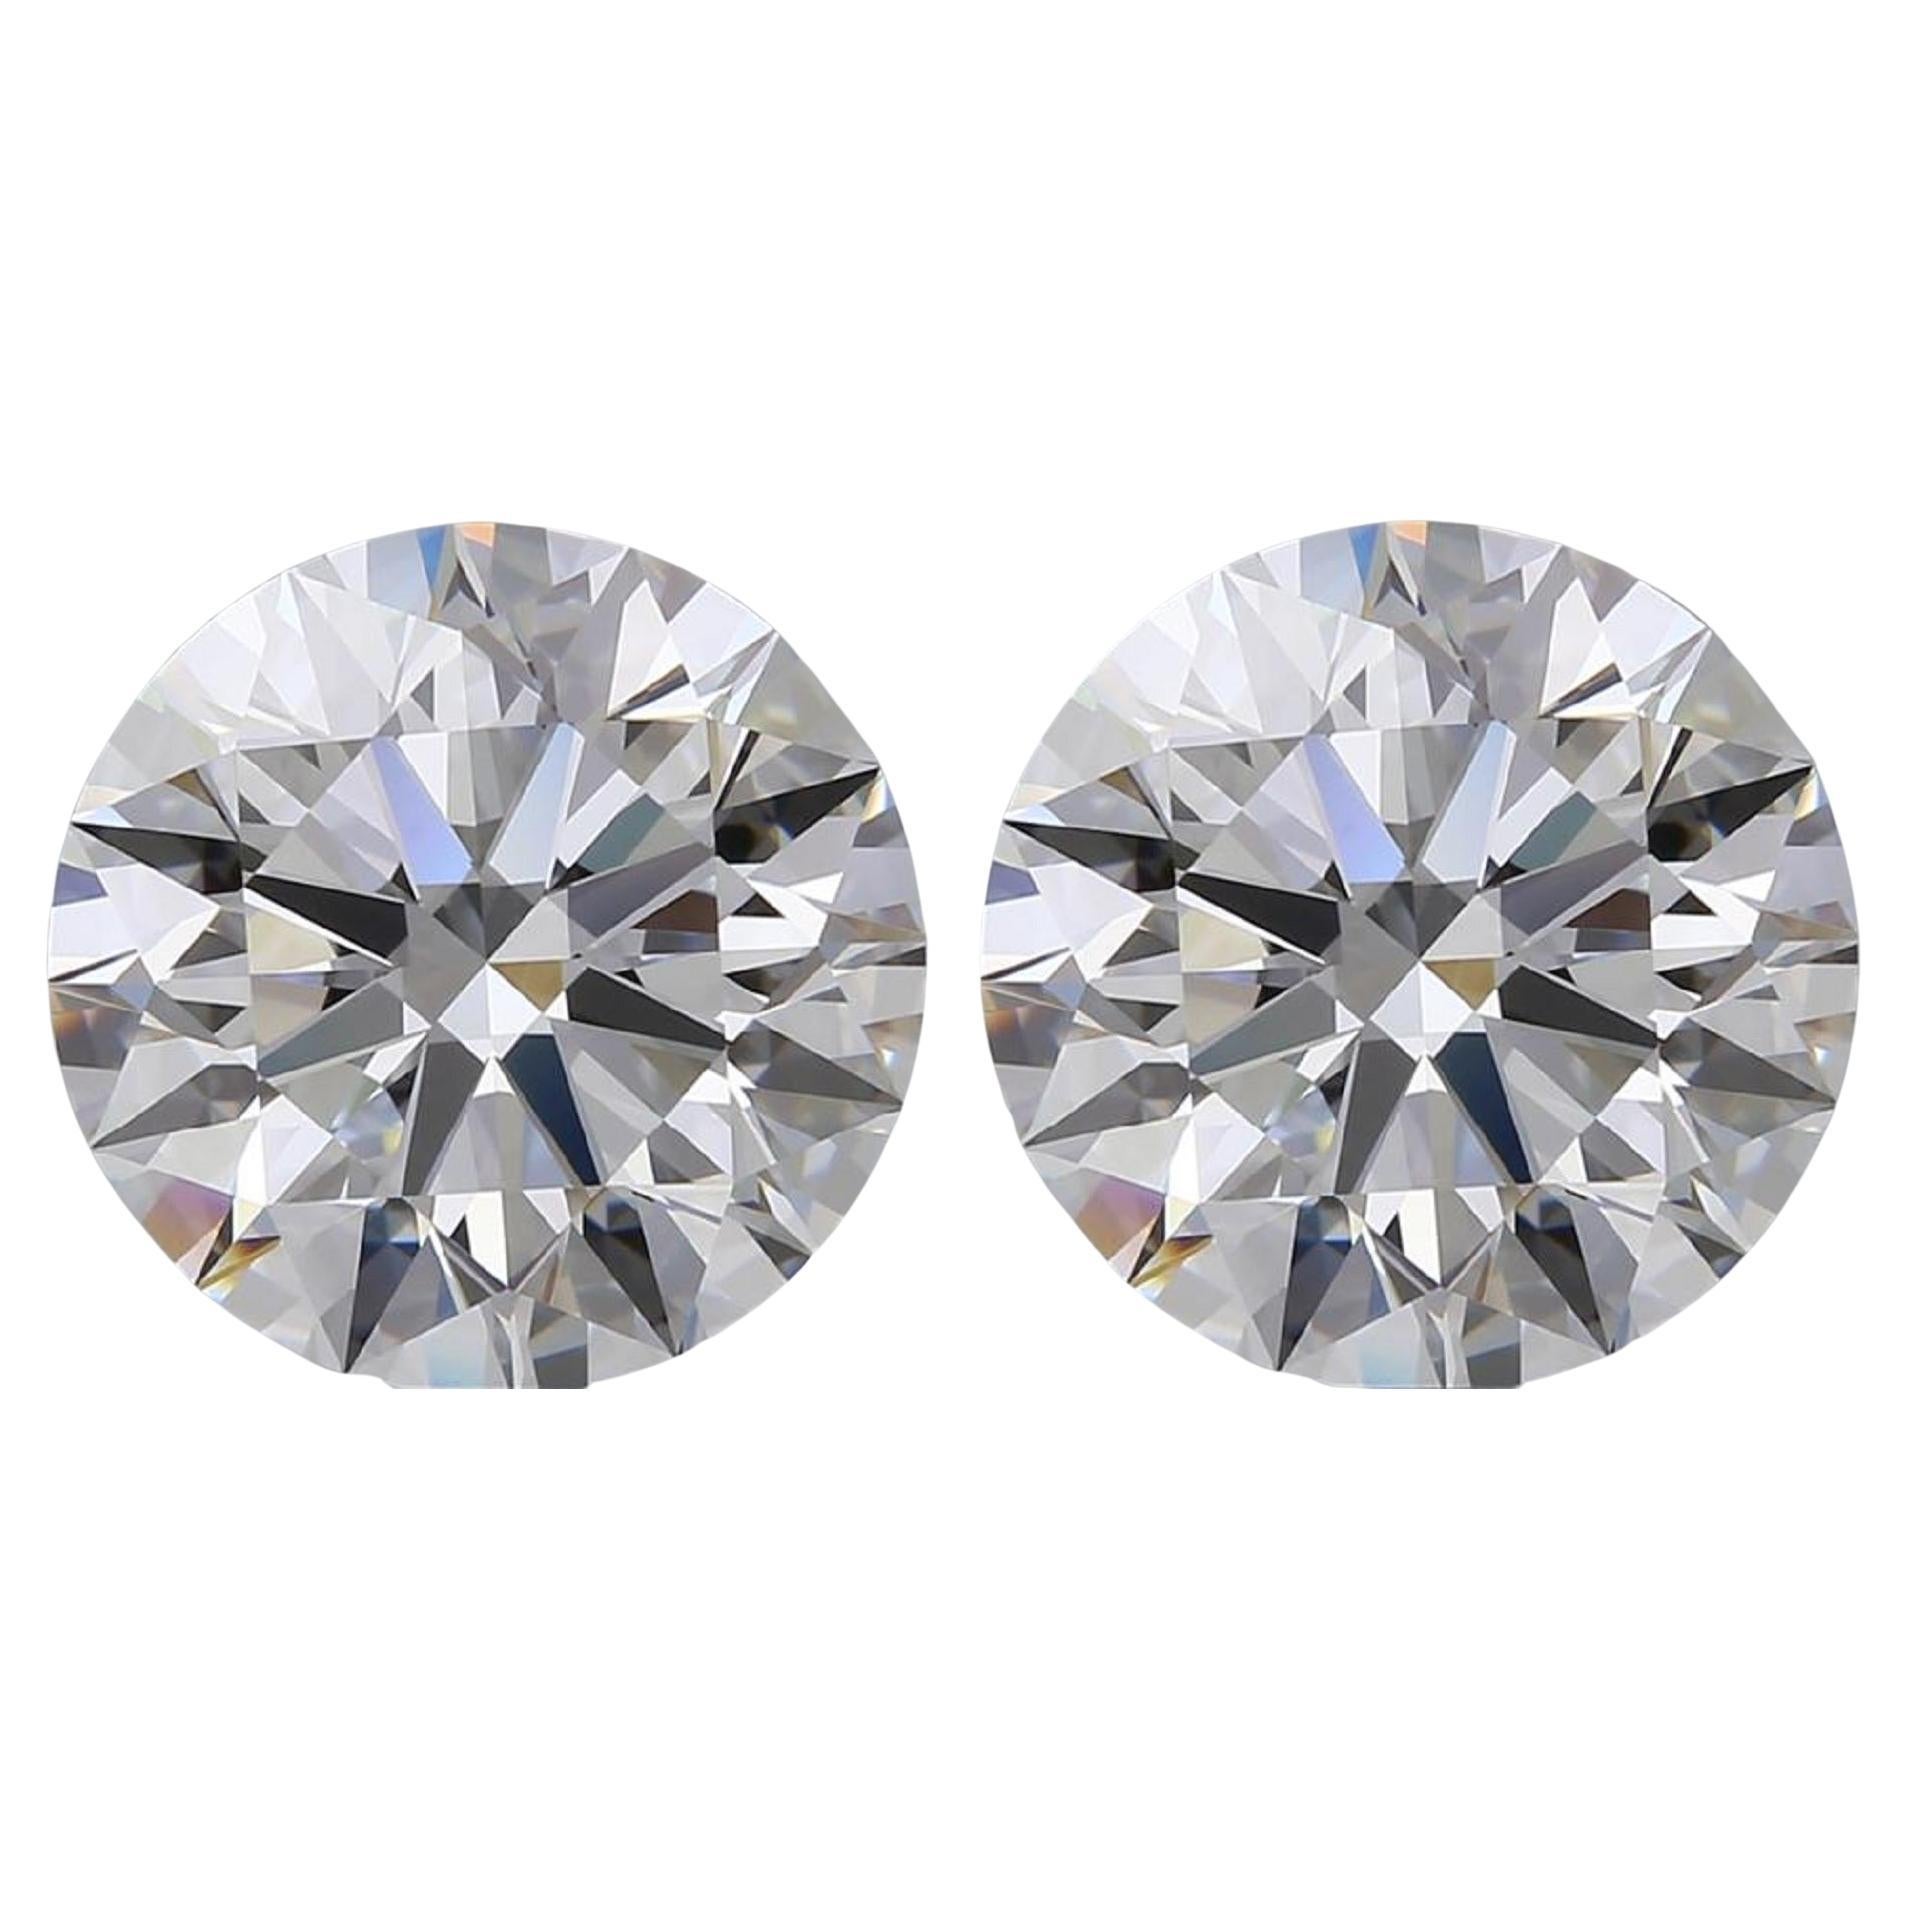 Fantastische, aufeinander abgestimmte Paare von Diamanten mit rundem Brillantschliff, die vom GIA als FLAWLESS für Reinheit und F für Farbe eingestuft wurden.
Jeder Diamant wiegt 2 Karat, also insgesamt 4 Karat.
